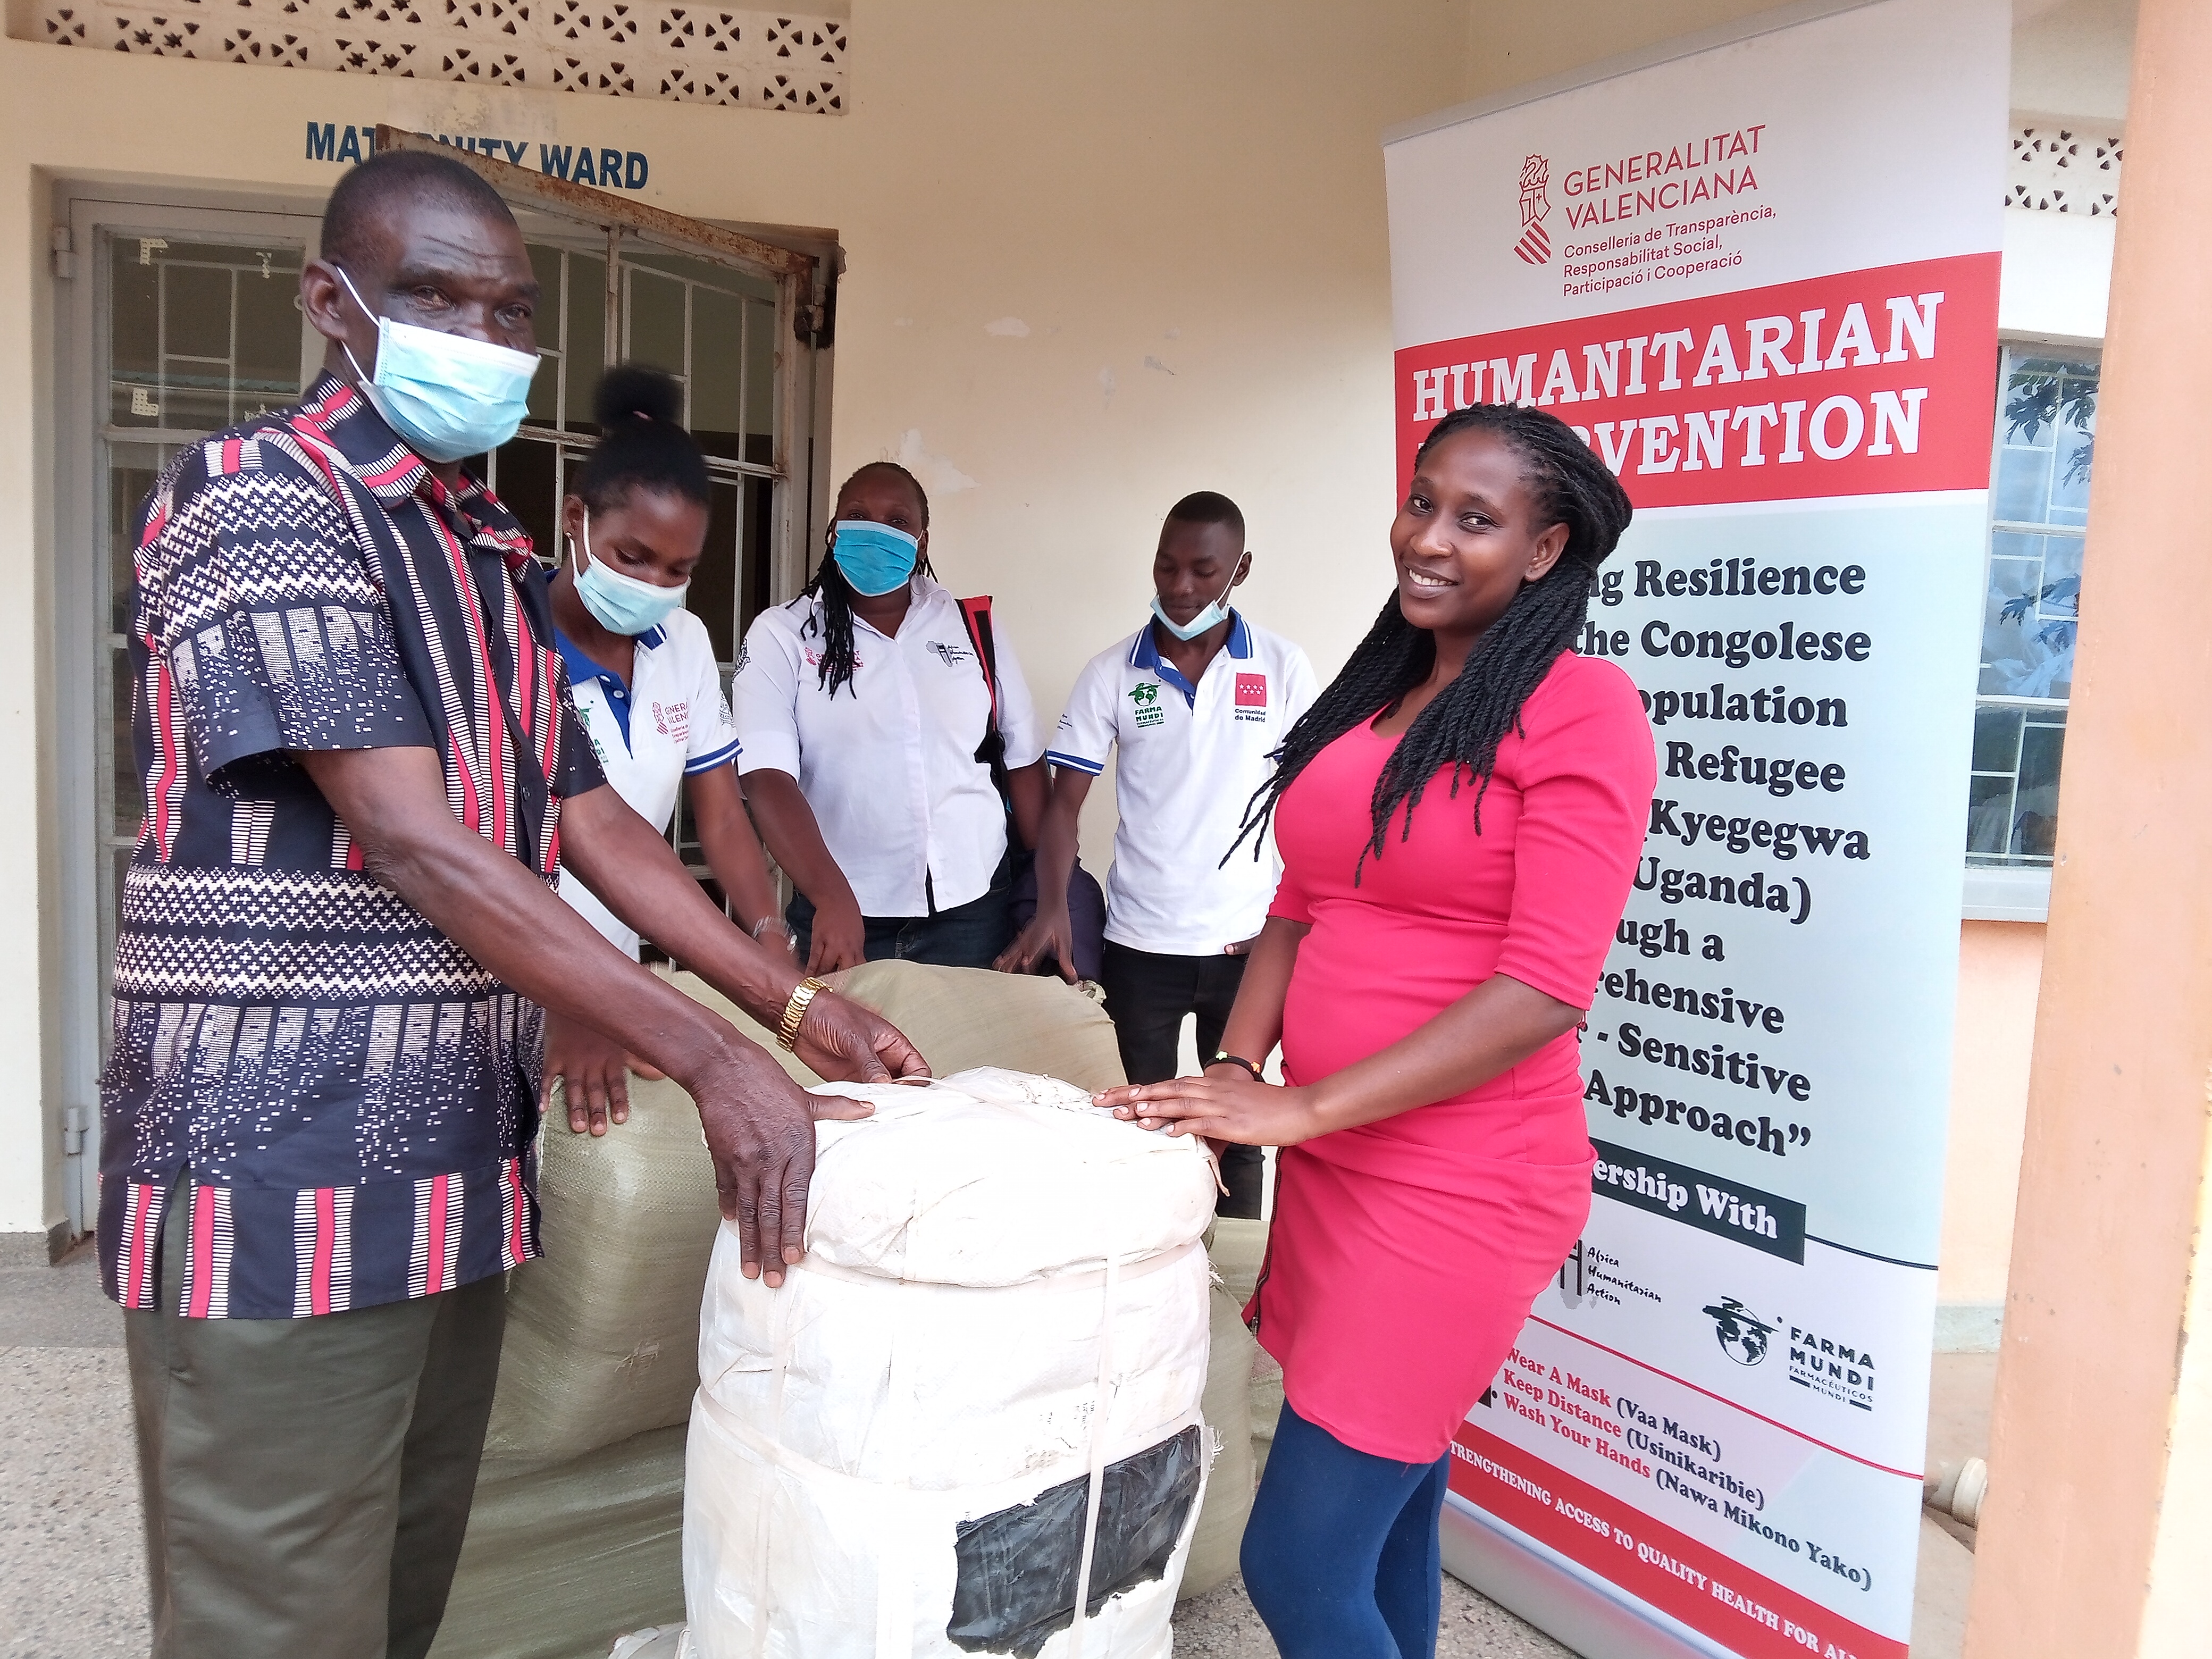 Reducimos la incidencia de la malaria entre la población refugiada congolesa en Uganda